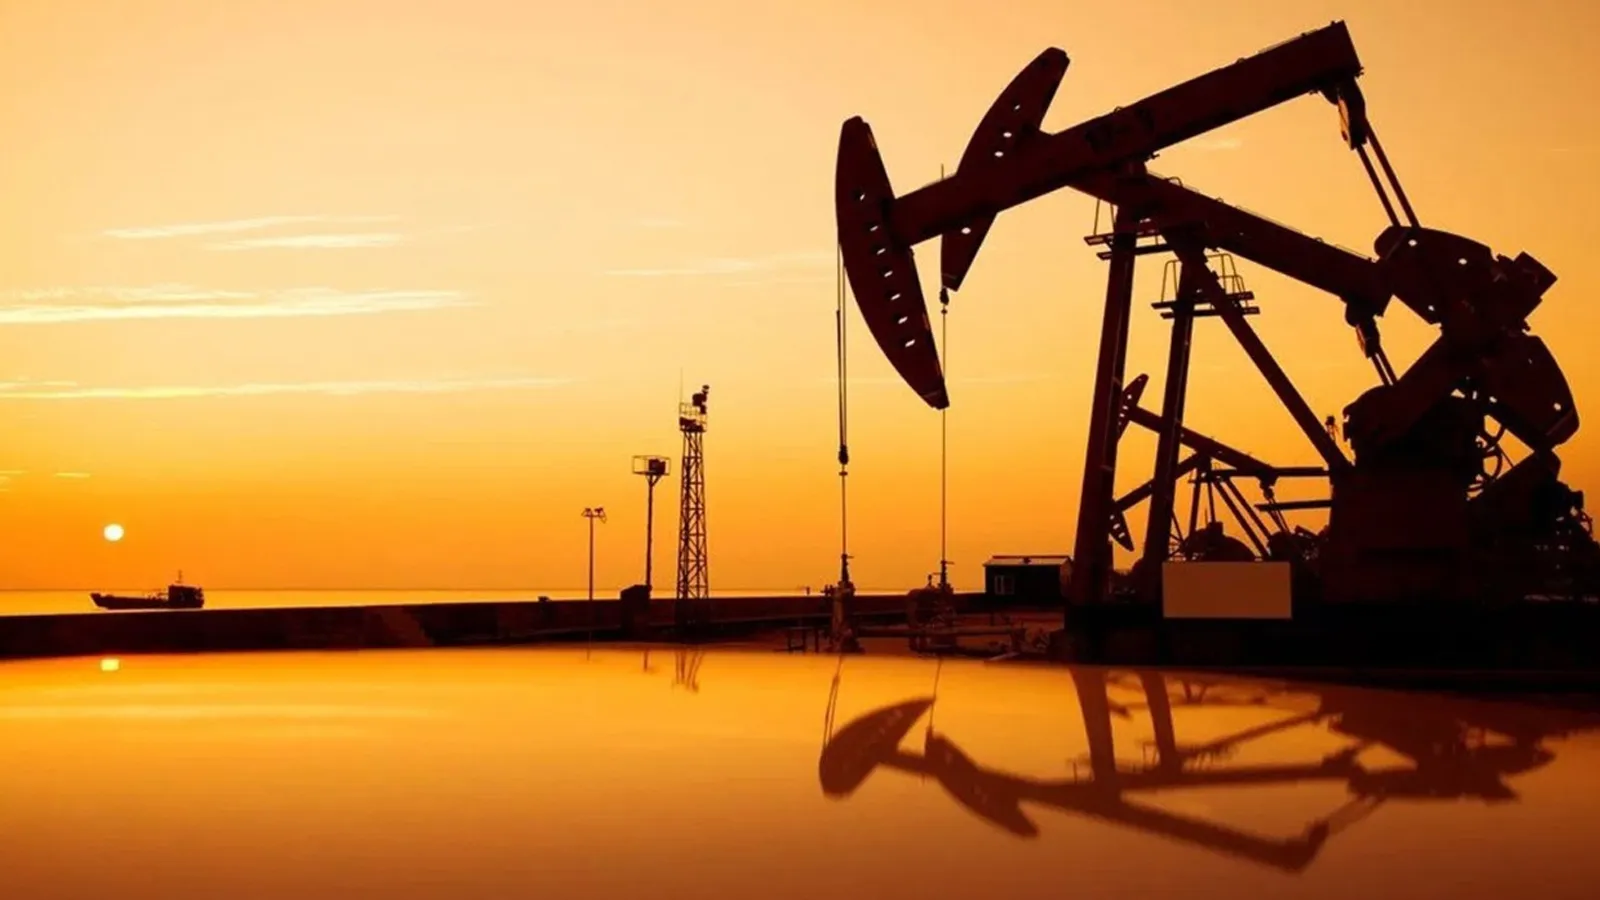 IEA, küresel petrol talebindeki artış öngörüsünü revize etti